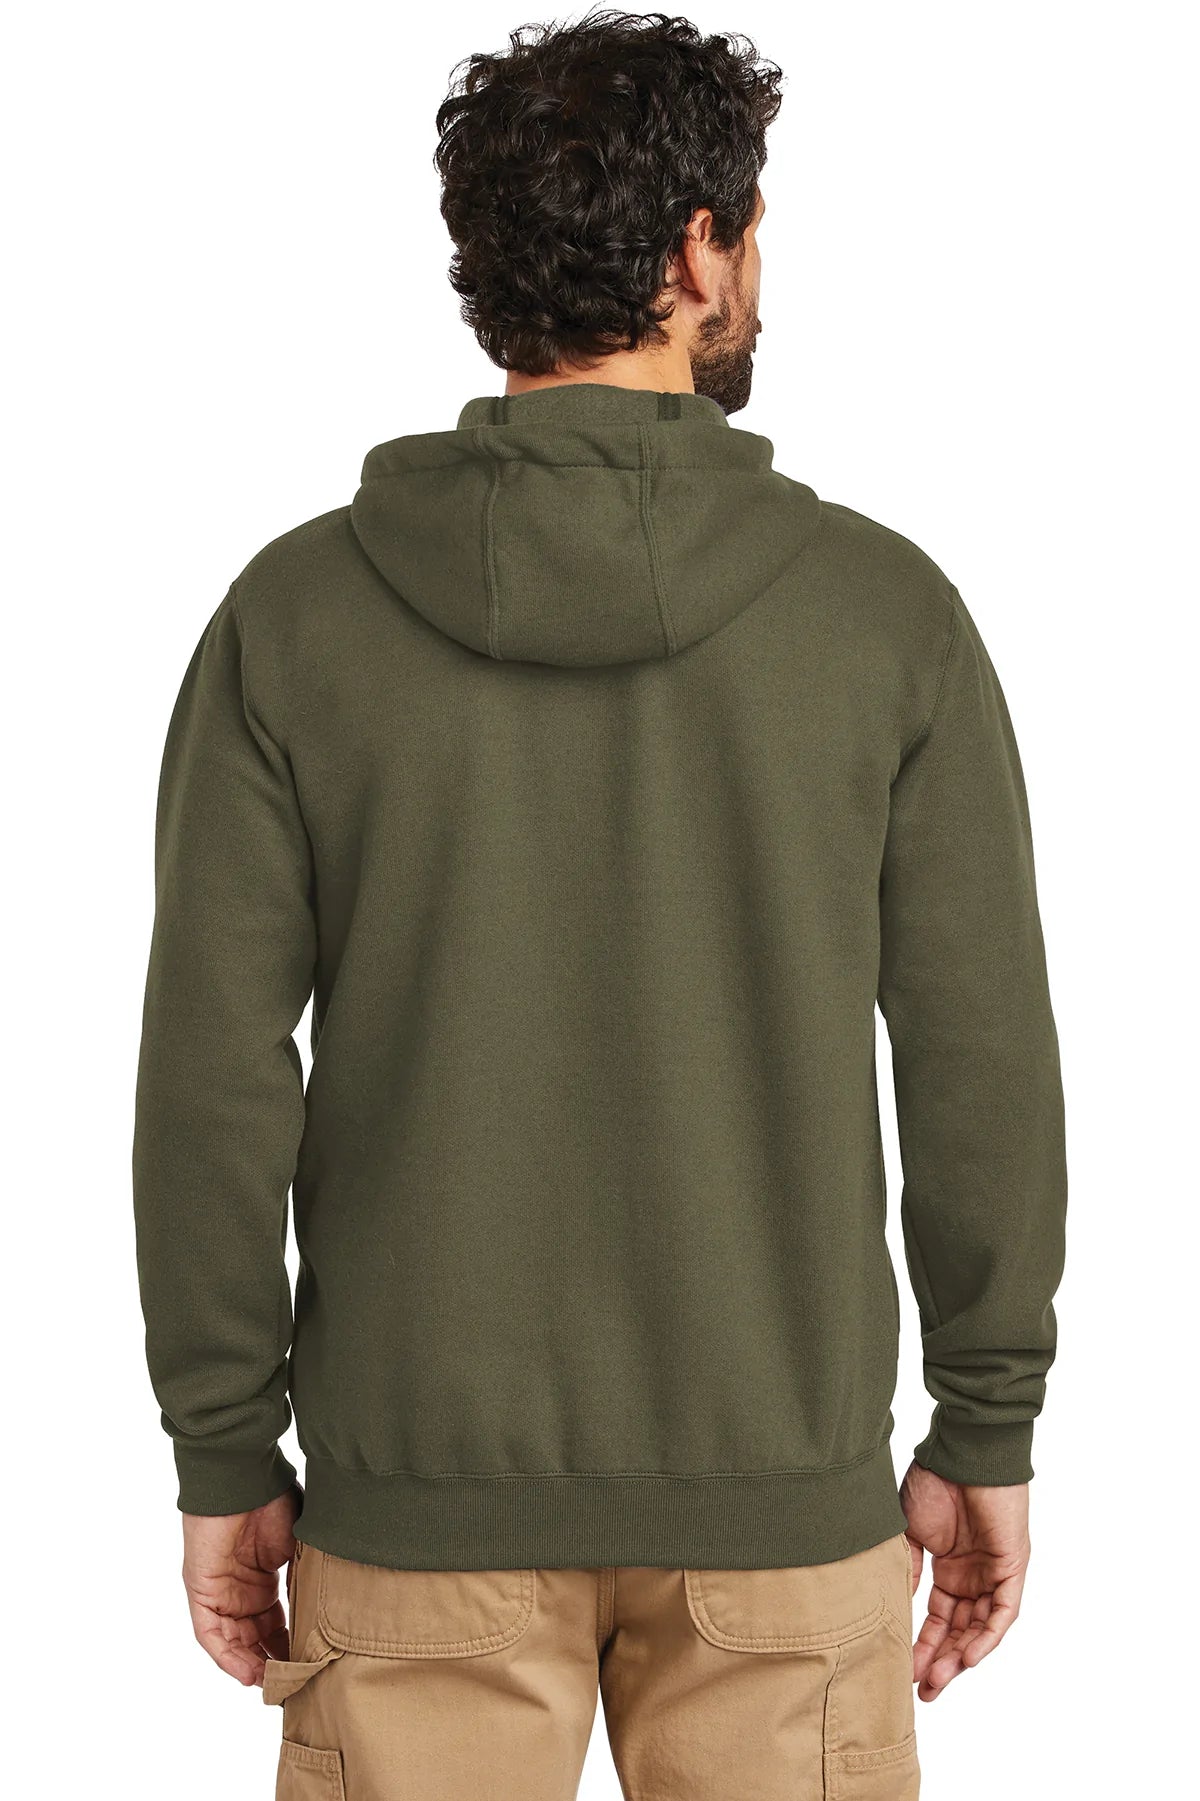 Branded Carhartt Midweight Zip-Front Sweatshirt Hooded Moss